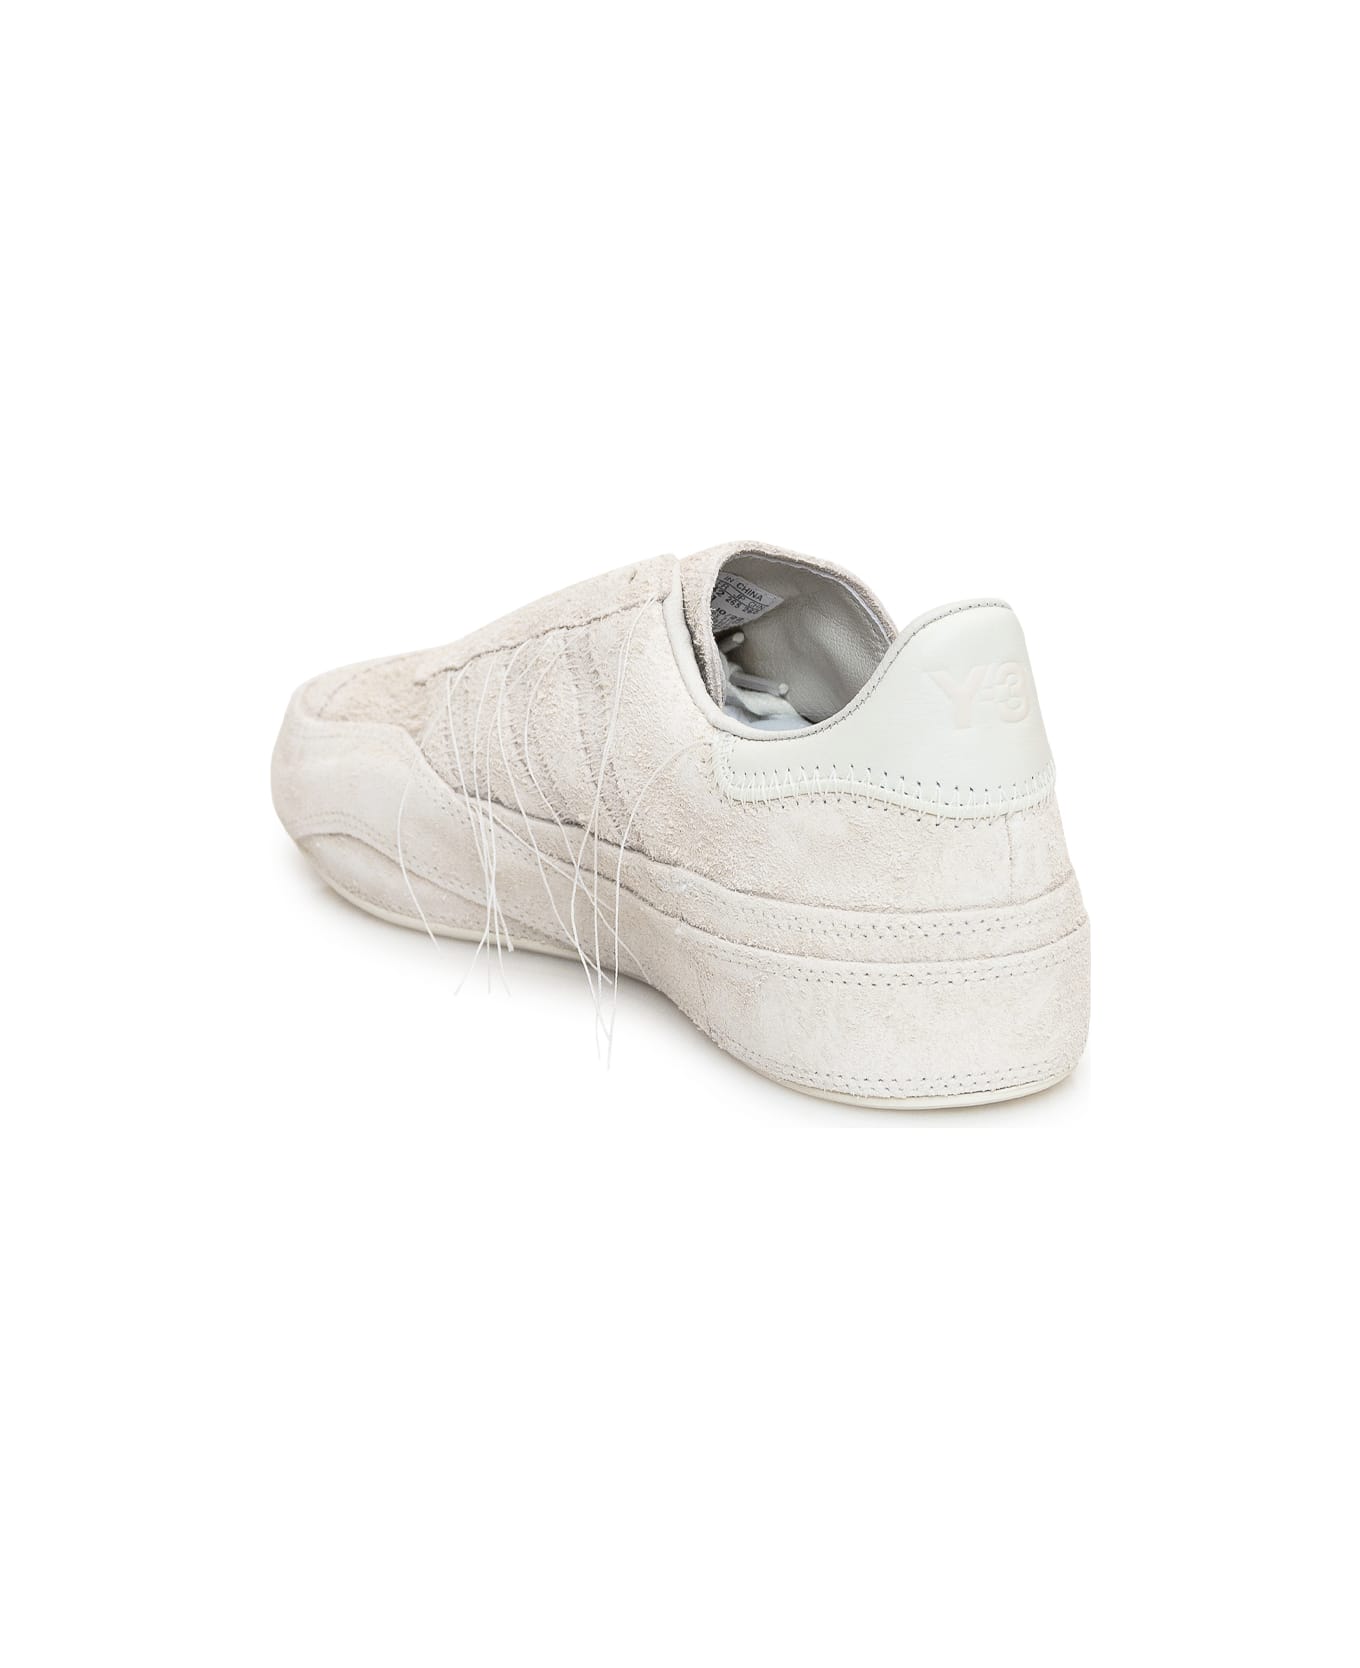 Y-3 Gazelle Sneaker - OWHITE/OWHITE/OWHITE